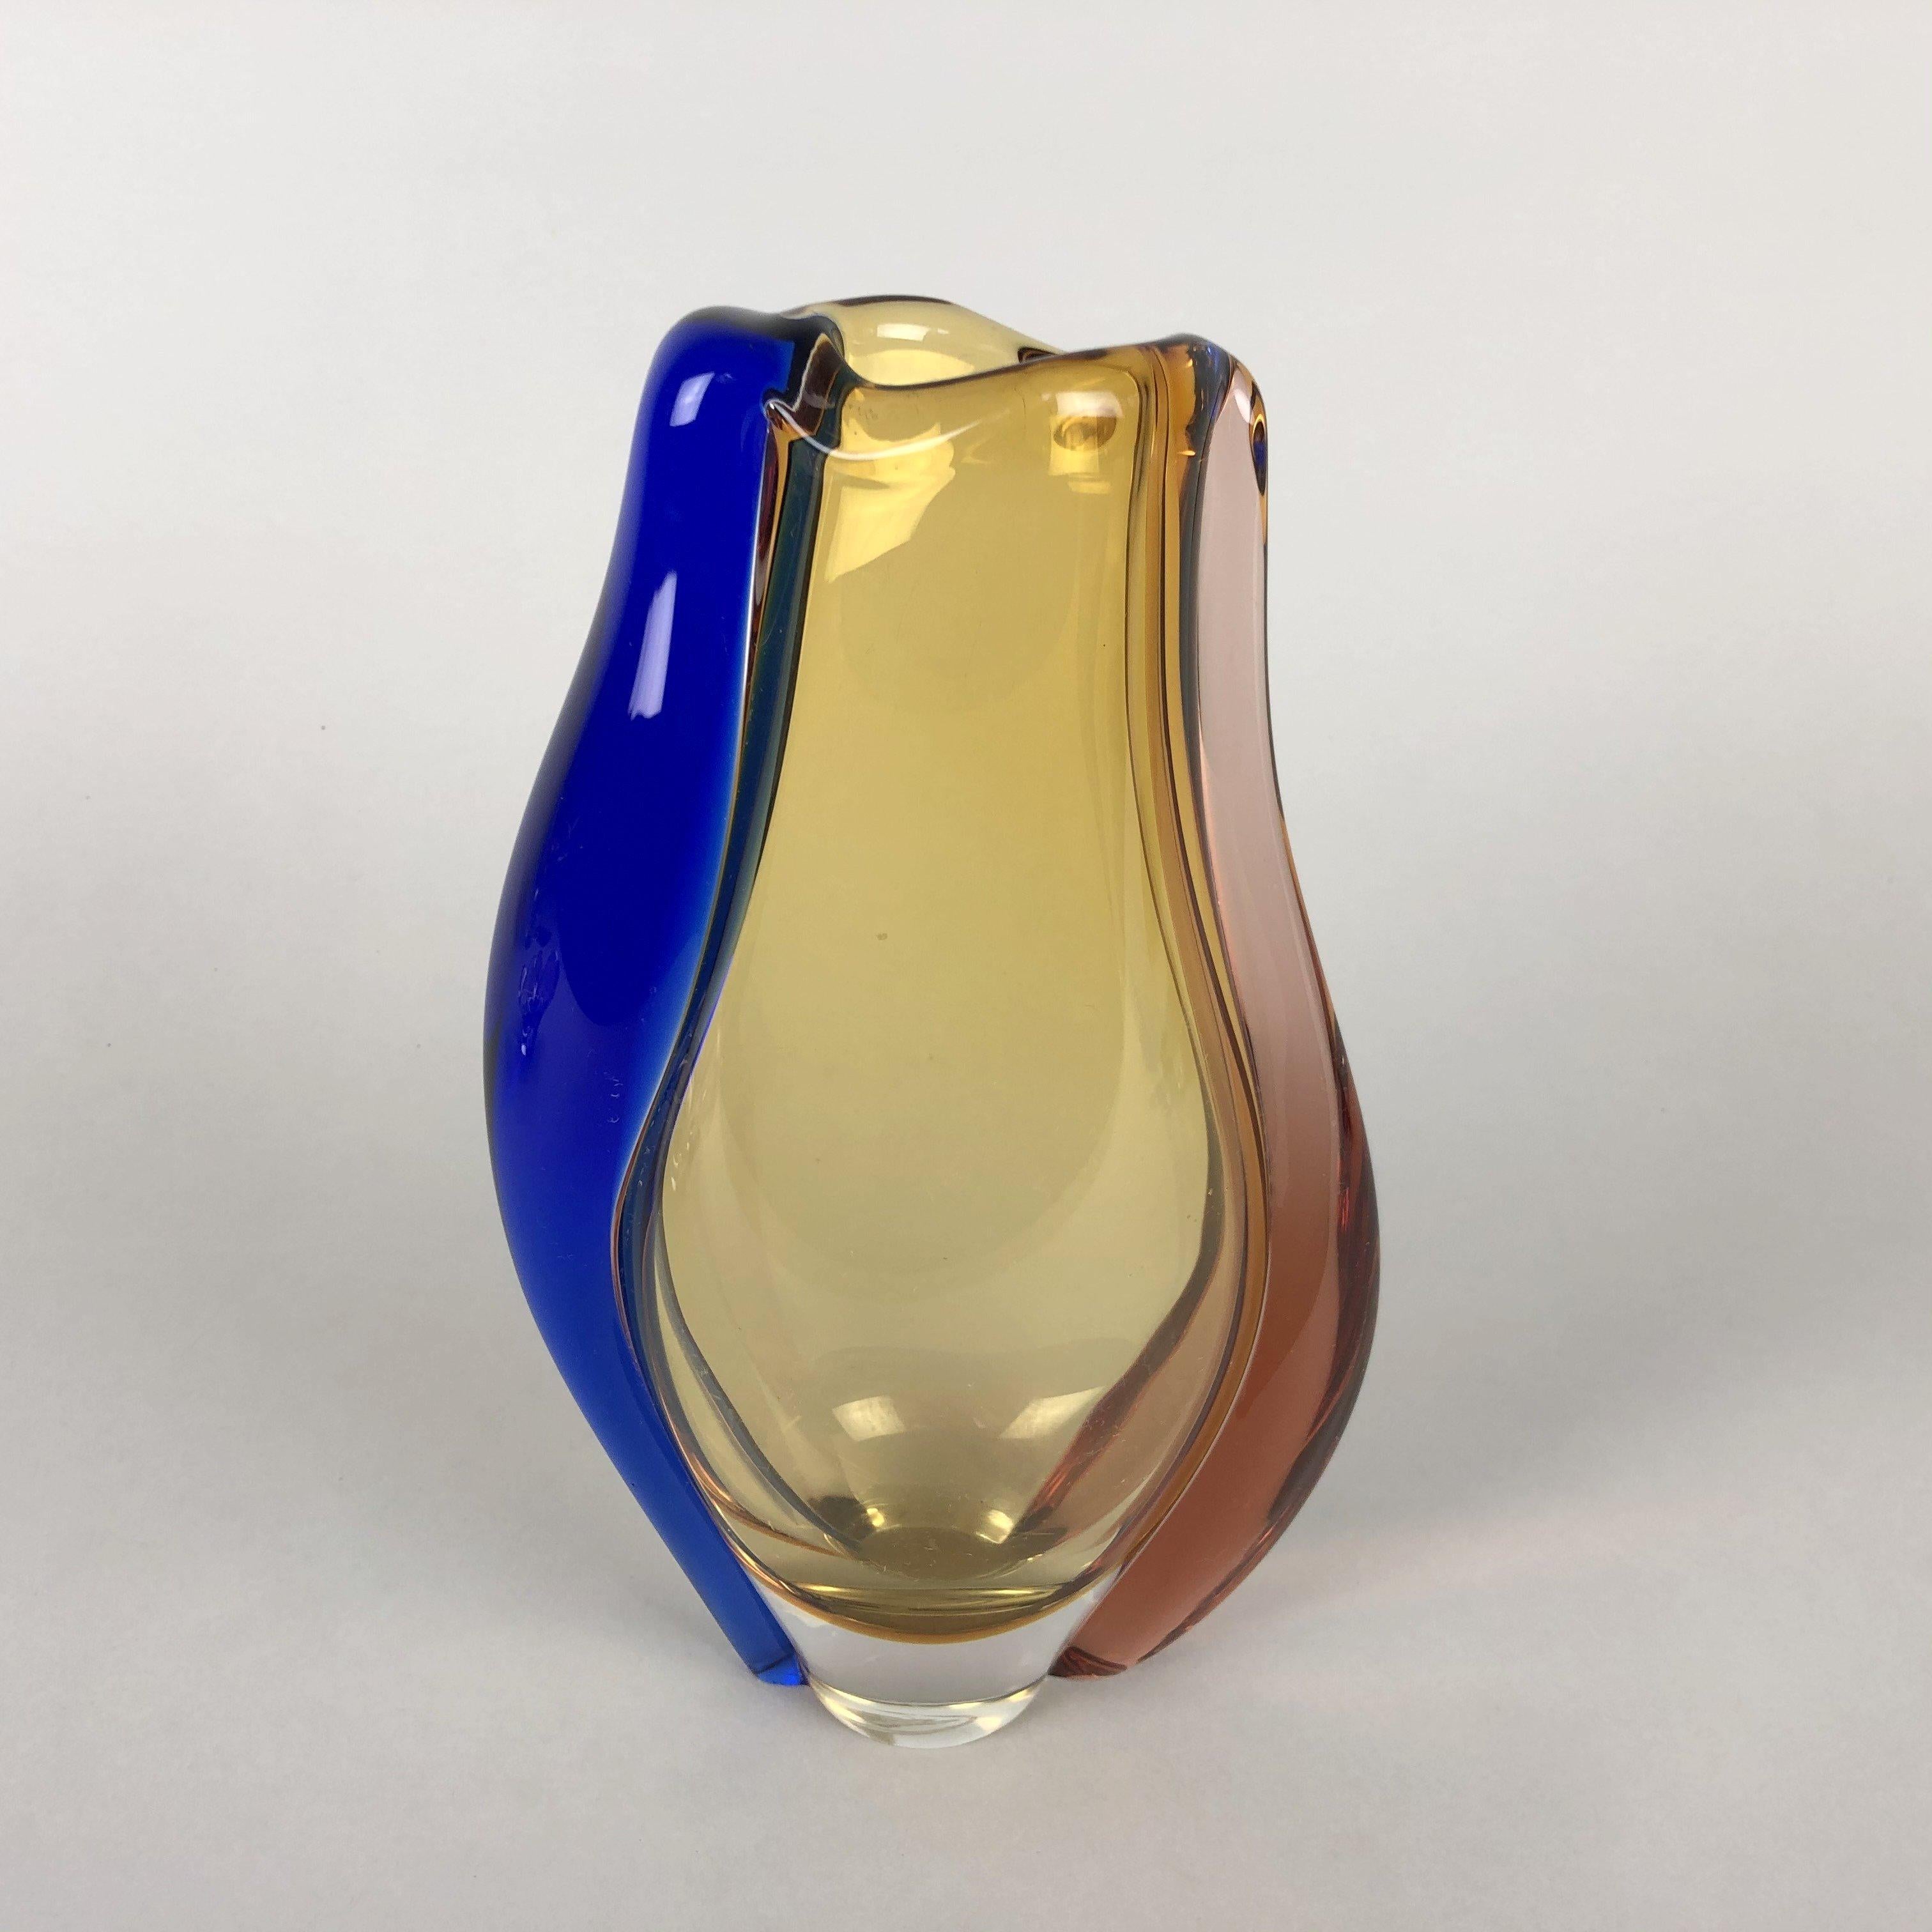 Art Glass Vase by Hana Machovska for Mstisov Glassworks, Czechoslovakia, 1960s In Good Condition For Sale In Praha, CZ